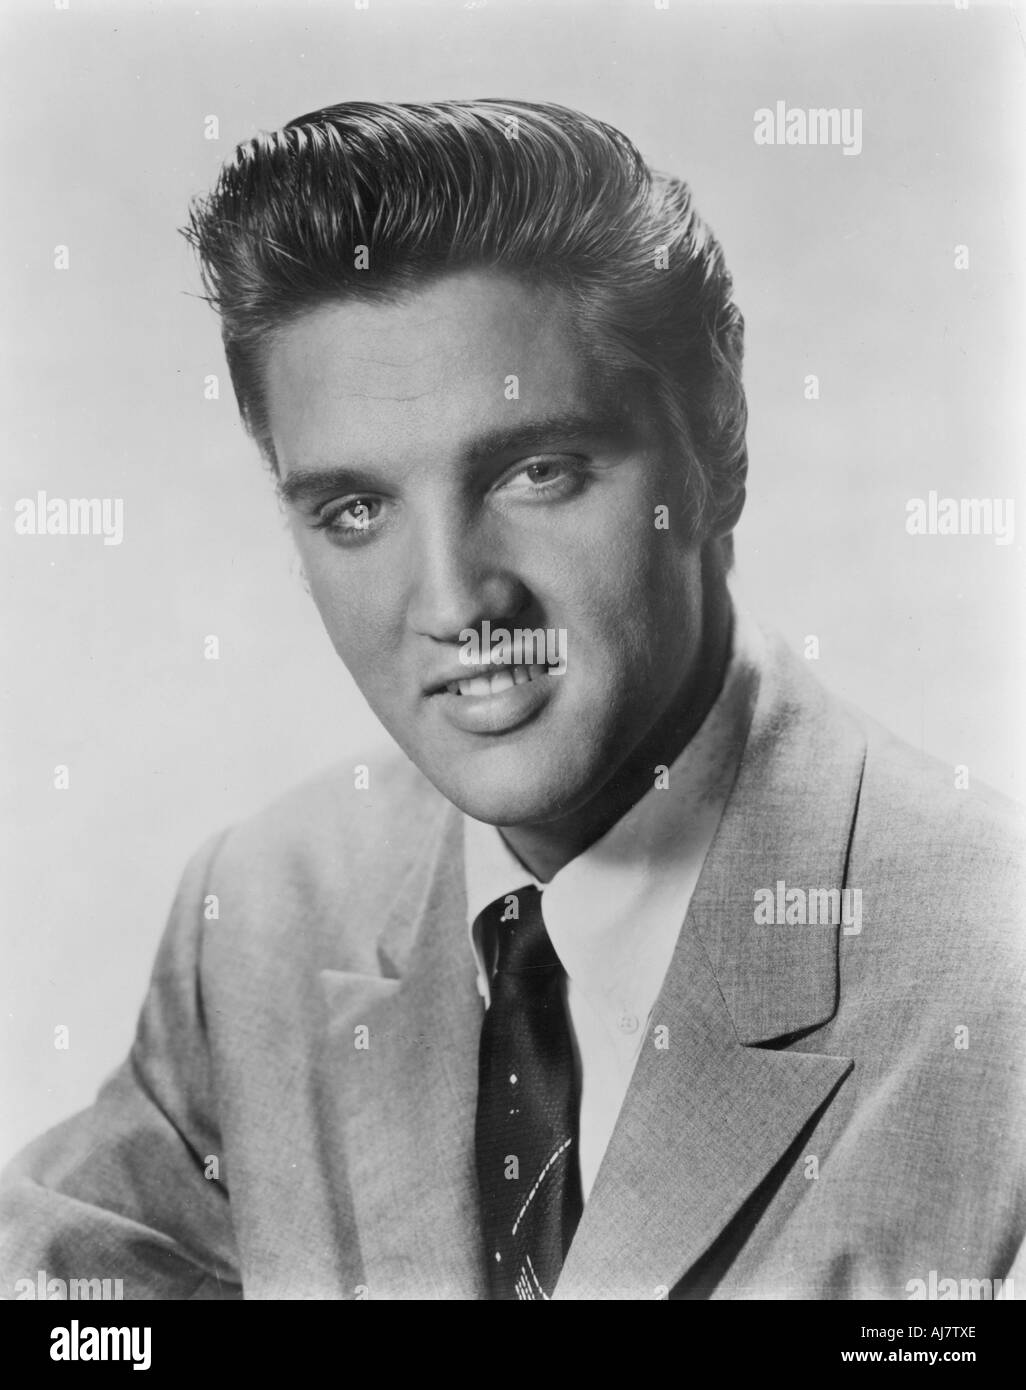 Elvis Presley, chanteur et comédien, 1956. Artiste : Inconnu Banque D'Images